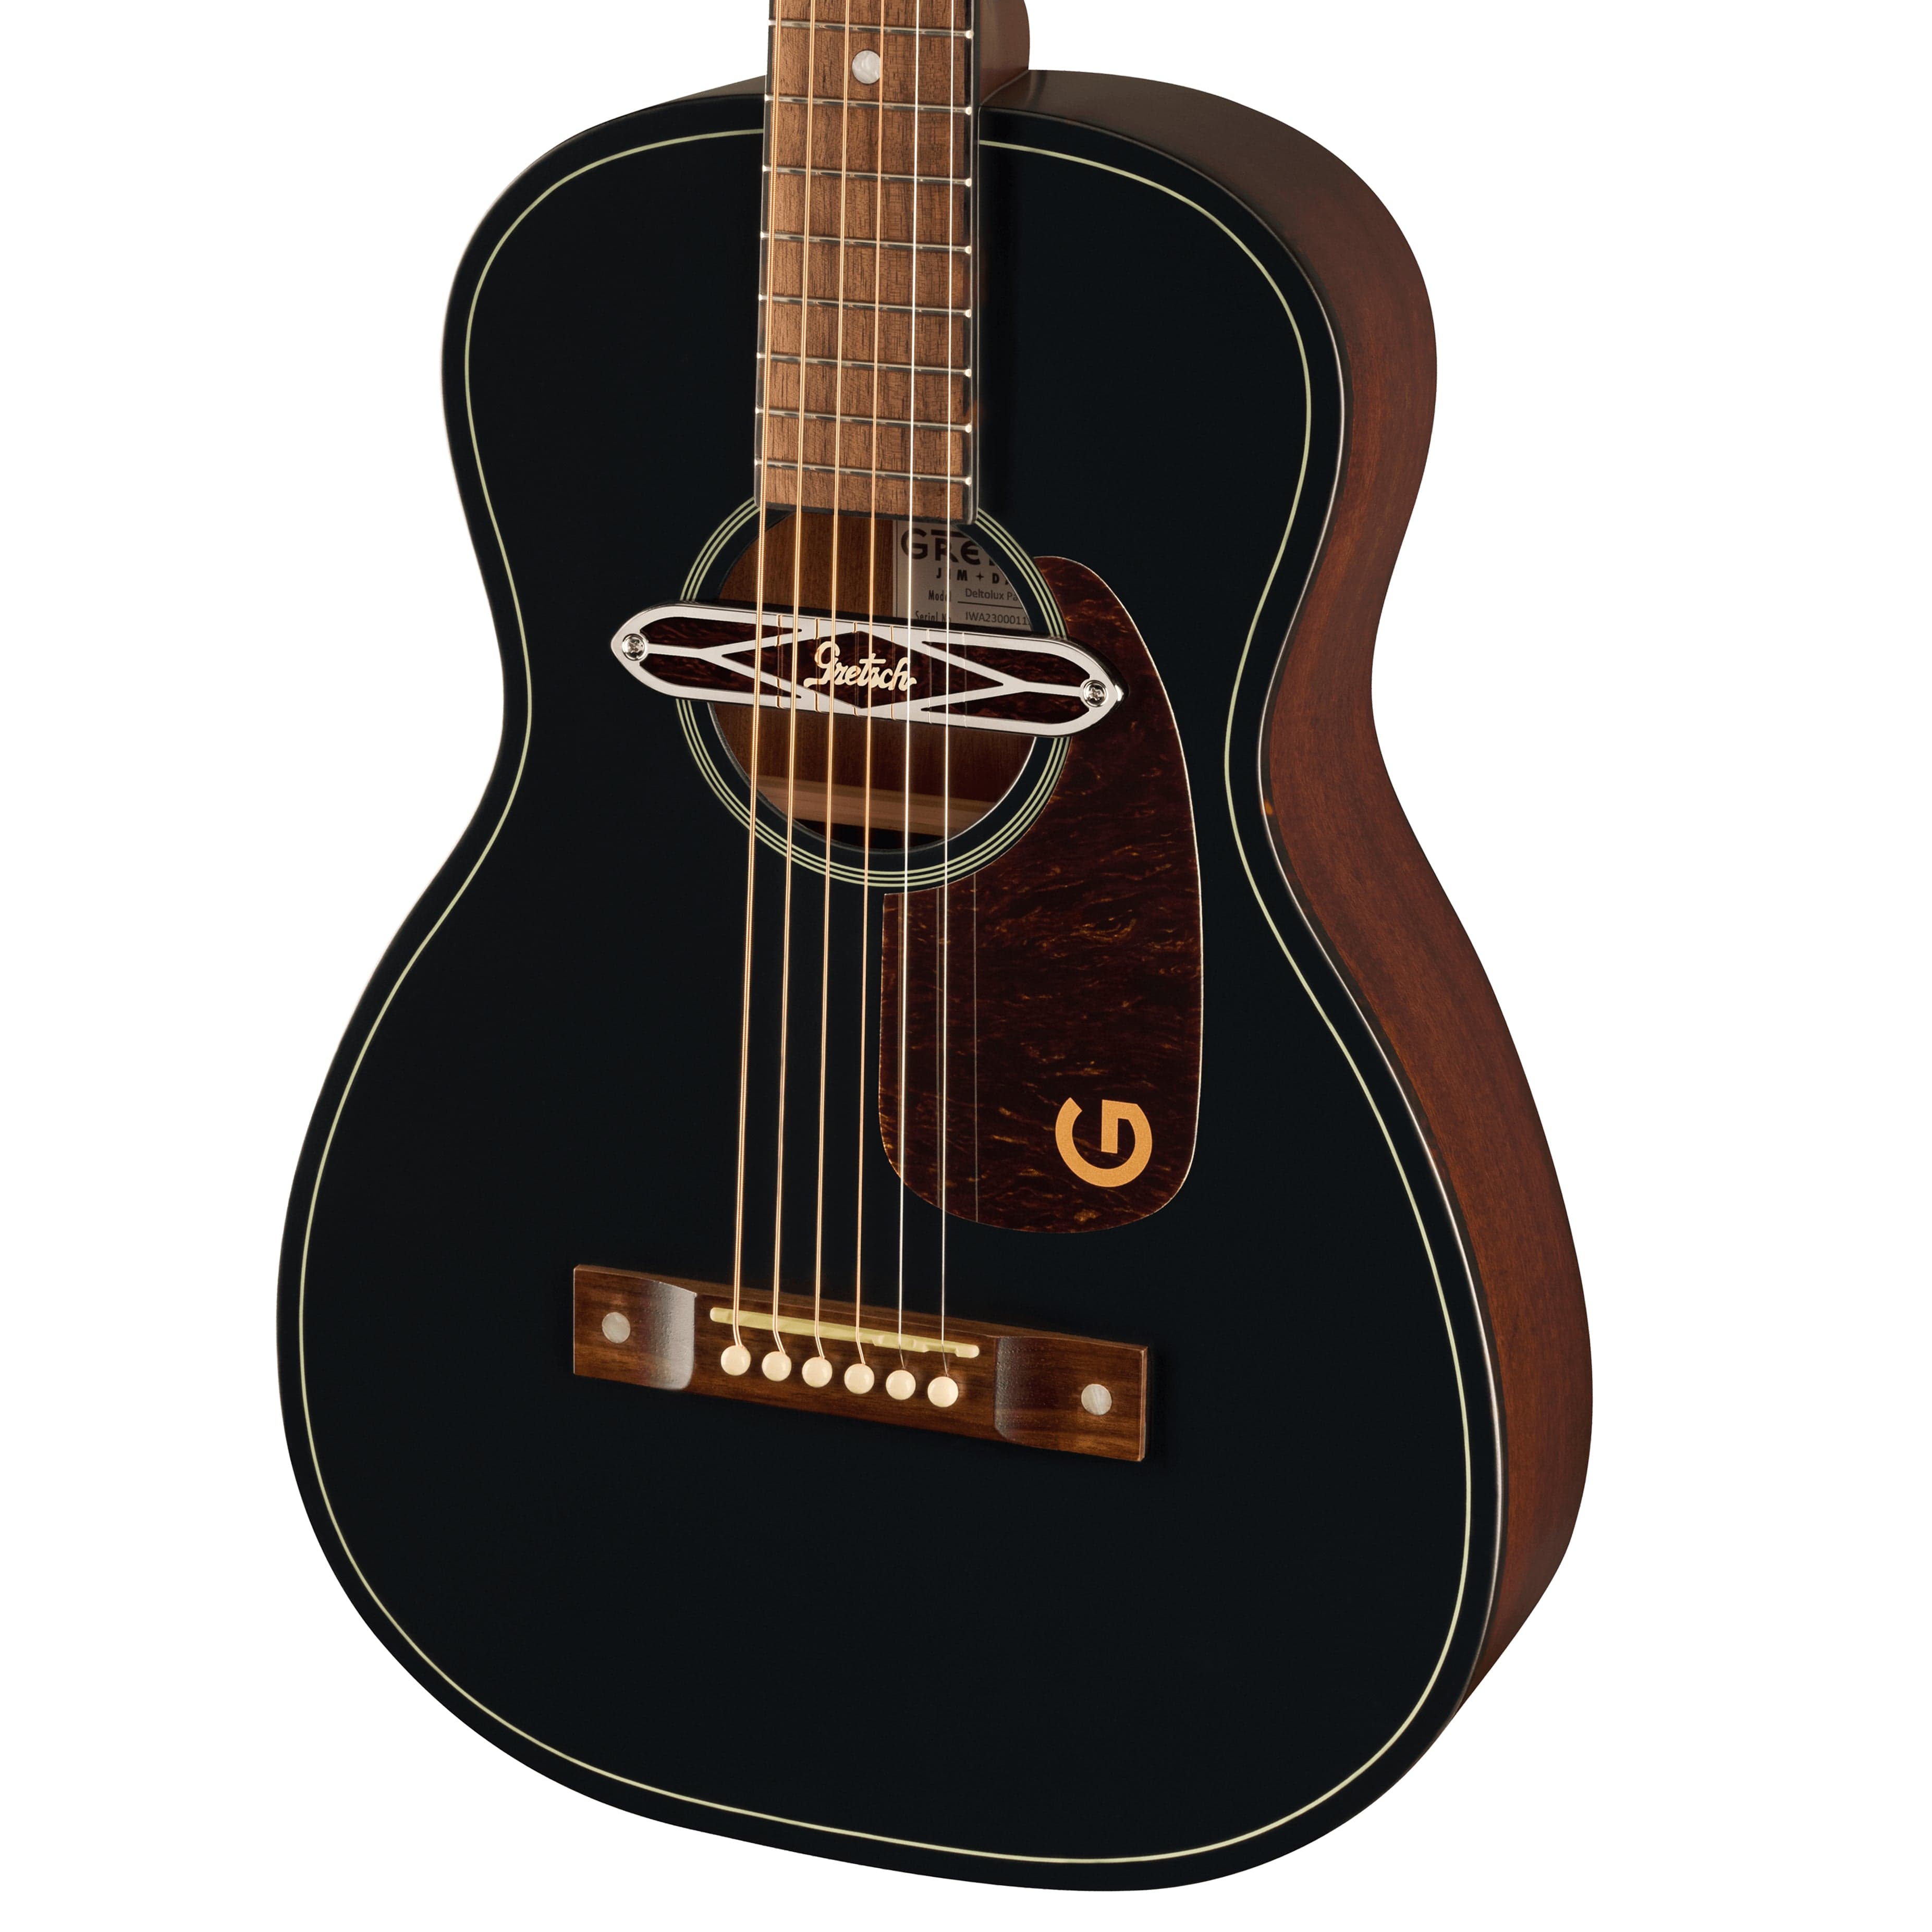 Gretsch Deltoluxe Parlor Acoustic Guitar Black Top Acoustic Guitars / Parlor